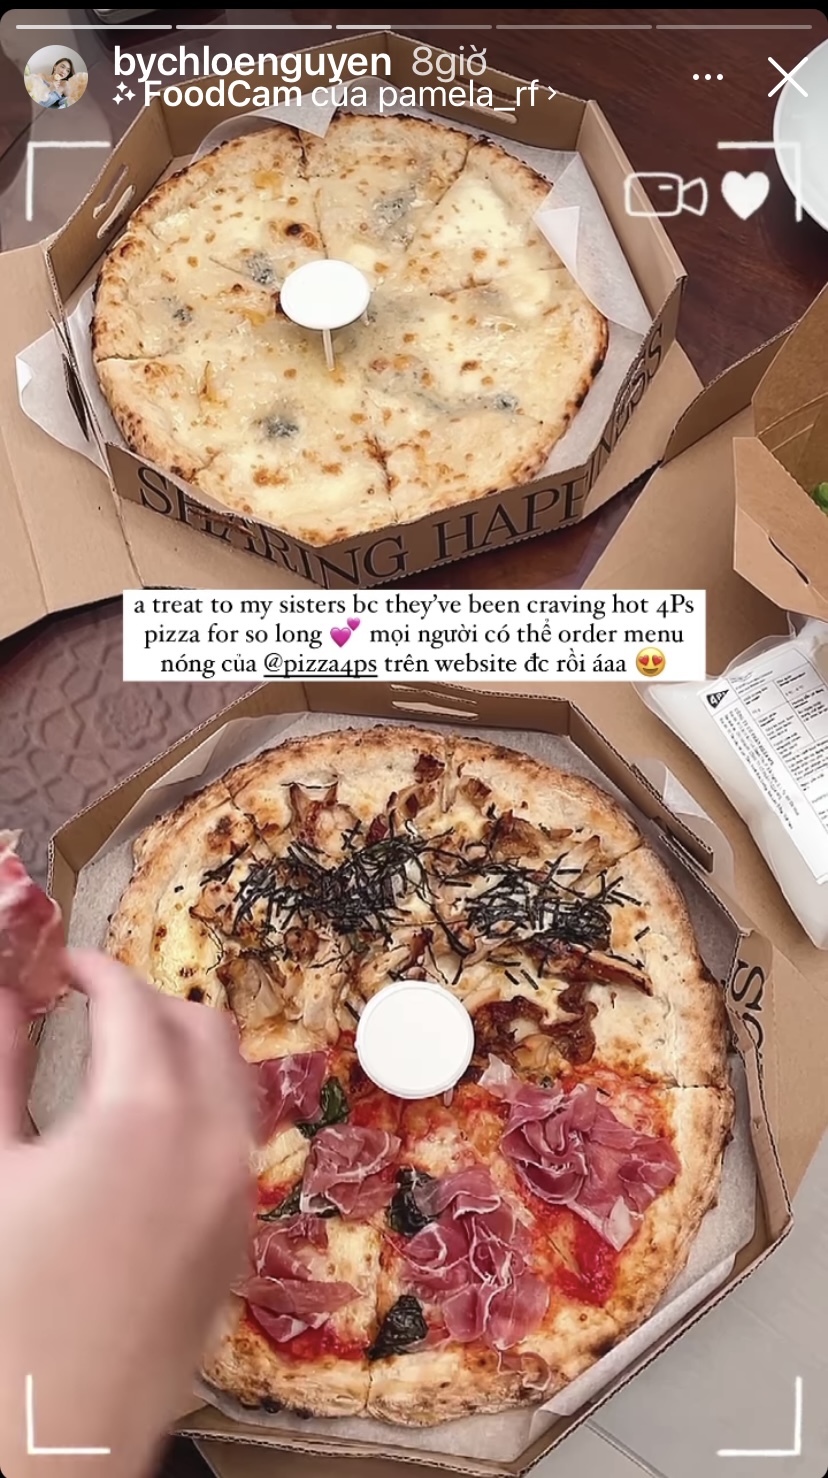 Beauty blogger Chloe Nguyễn khoe những chiếc bánh pizza nóng hổi mà cô mới nhanh tay order được.